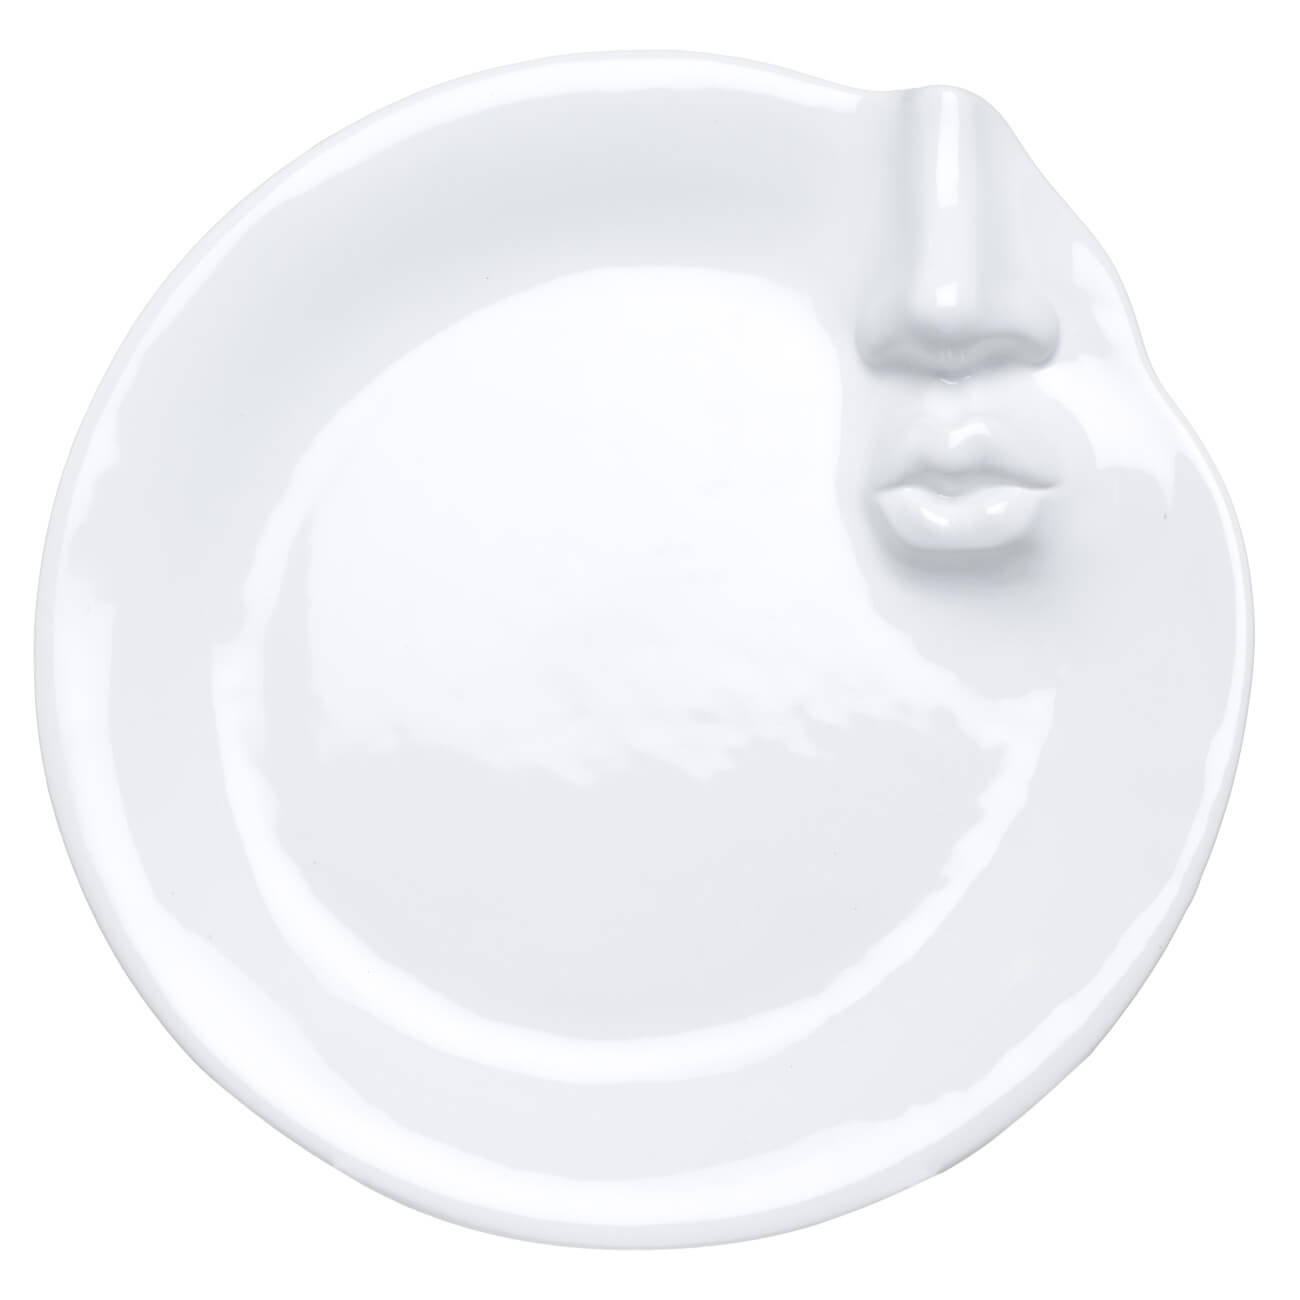 блюдо 24 см керамика белое лицо face Блюдо, 22 см, керамика, белое, Лицо, Face